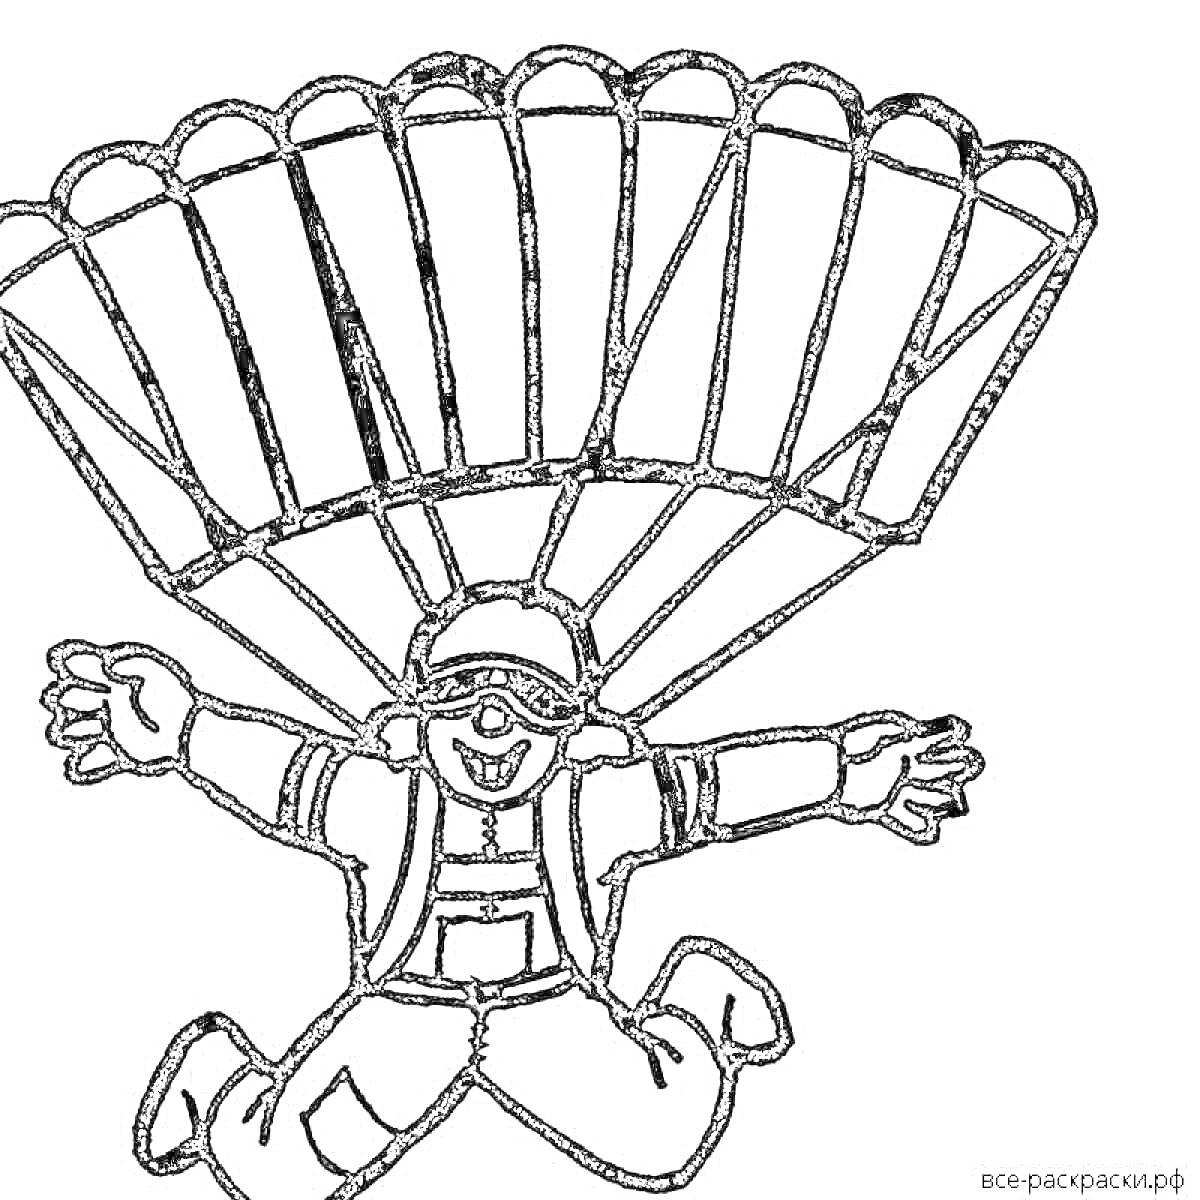 Раскраска парашютист. Человек с парашютом, одет в очки и шлем, в свободном падении